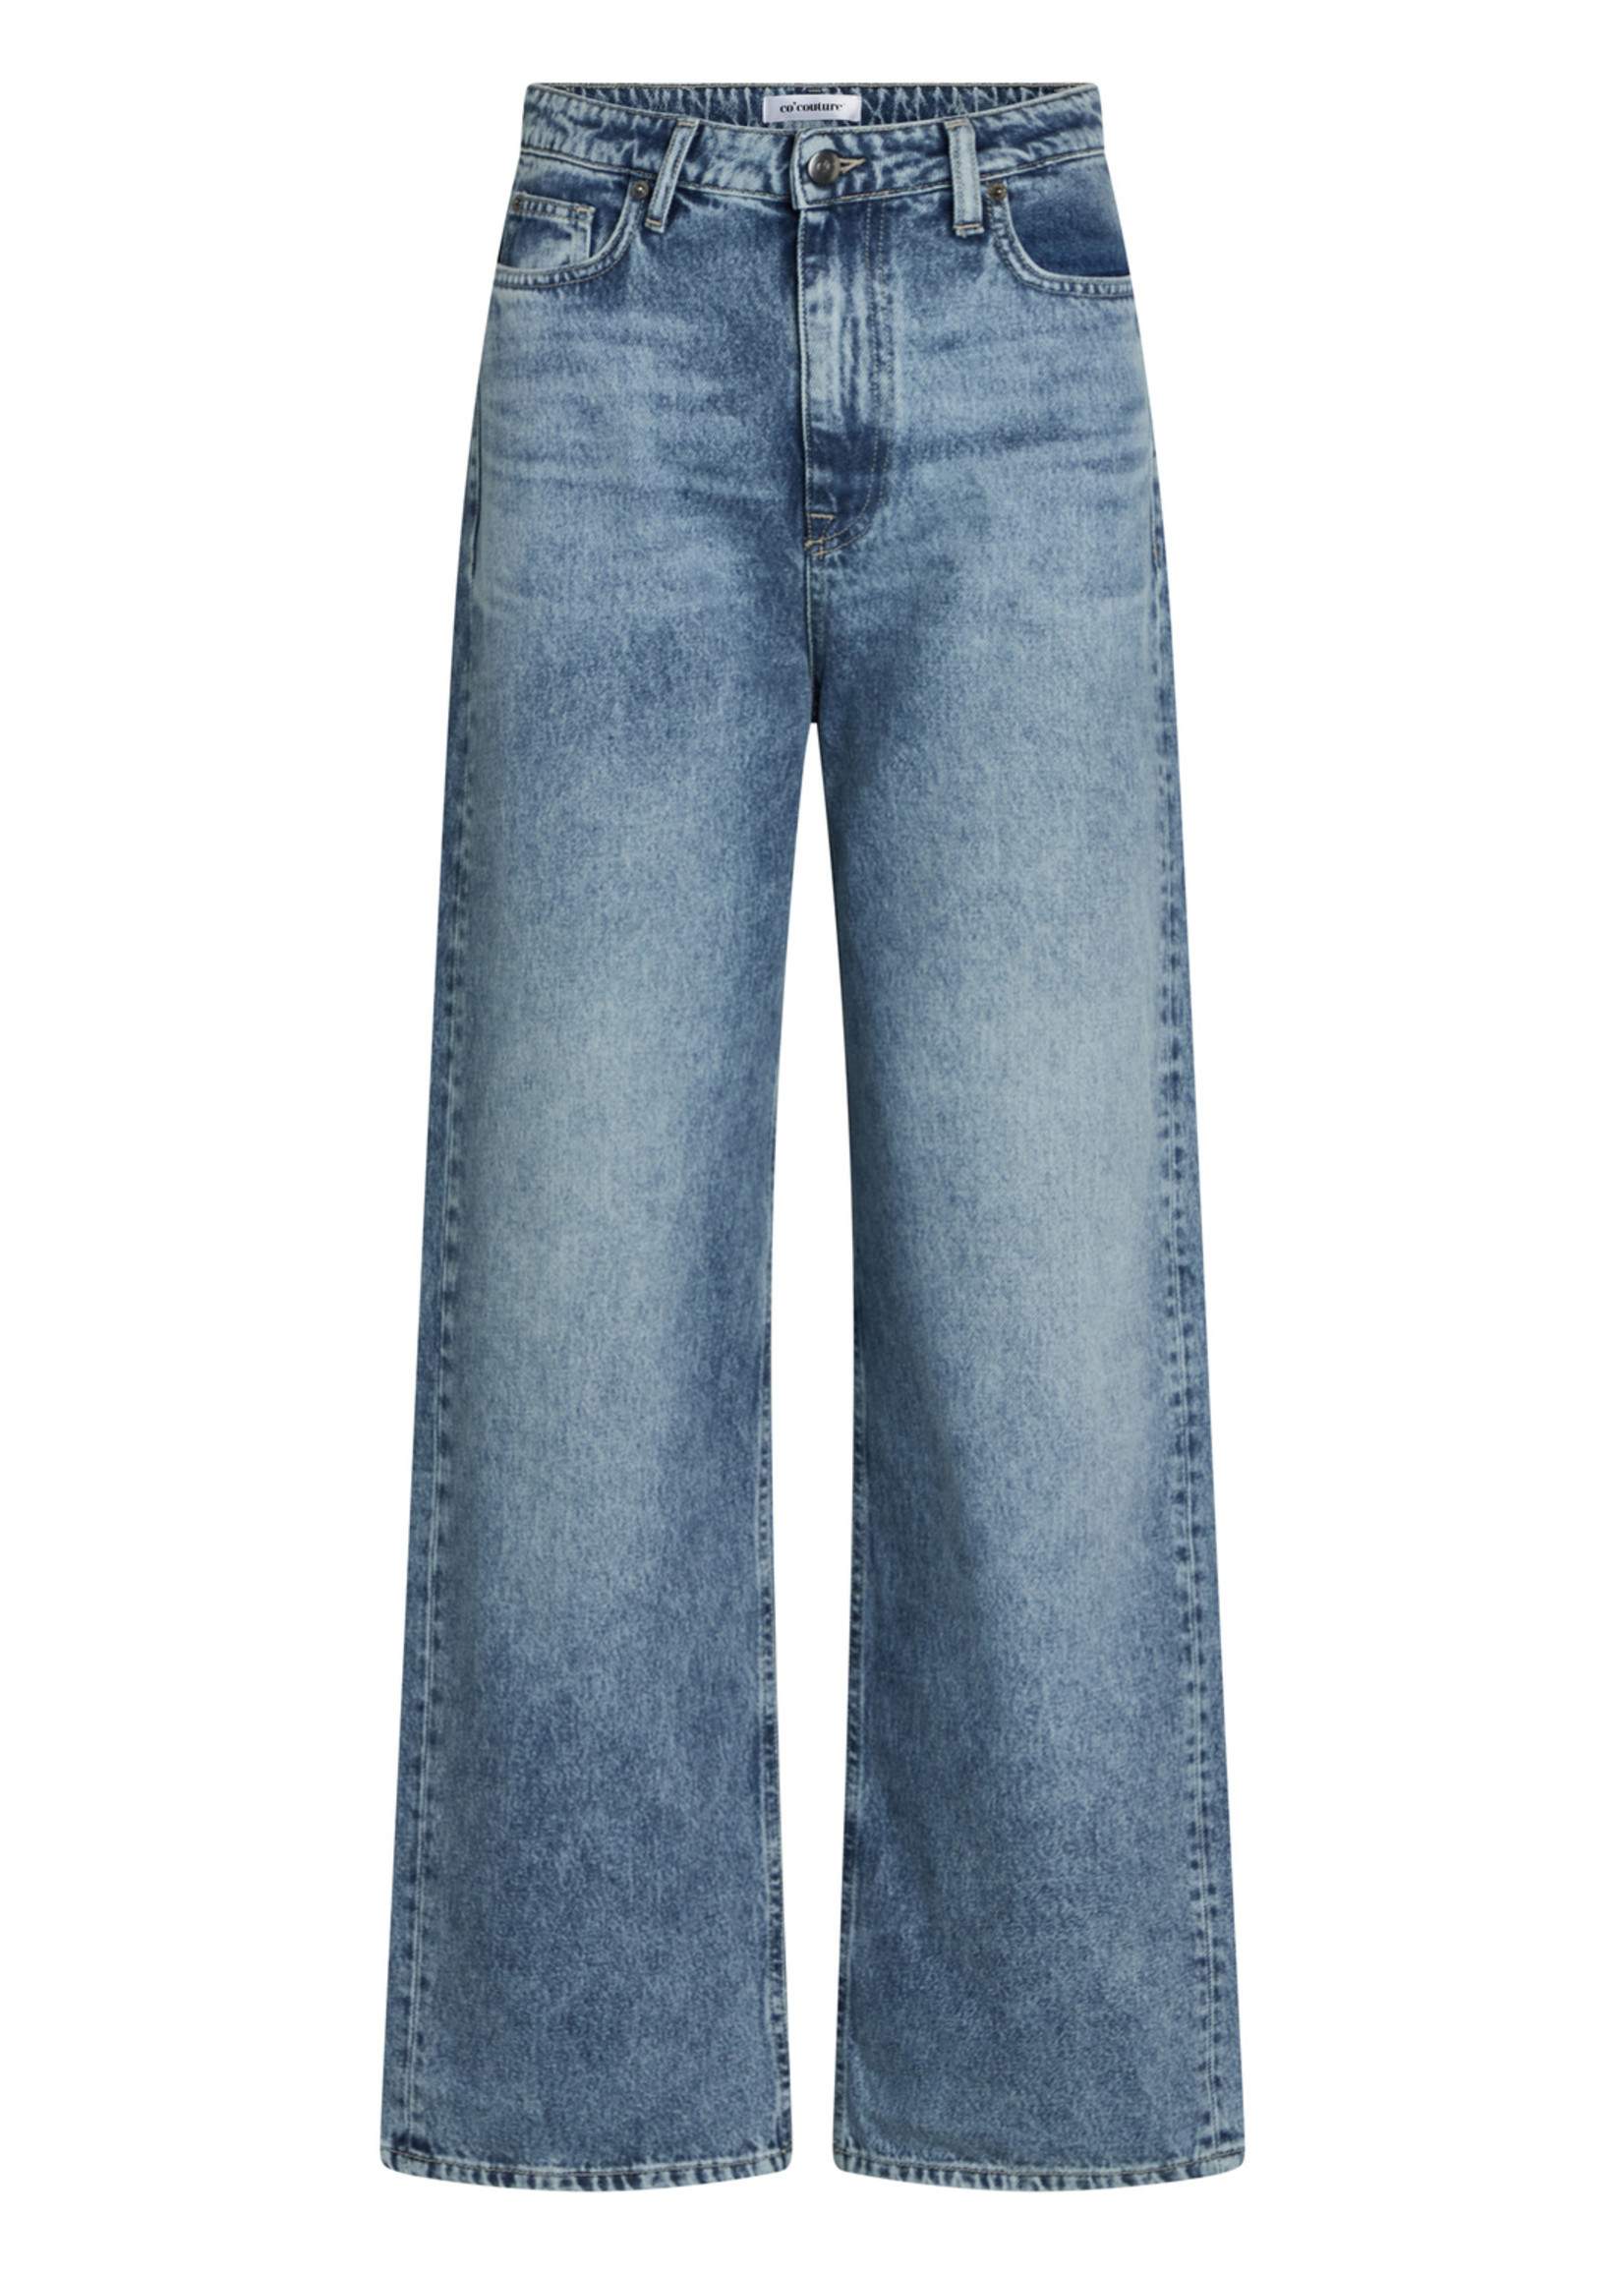 Co'couture Vika Jeans - Denim Blue